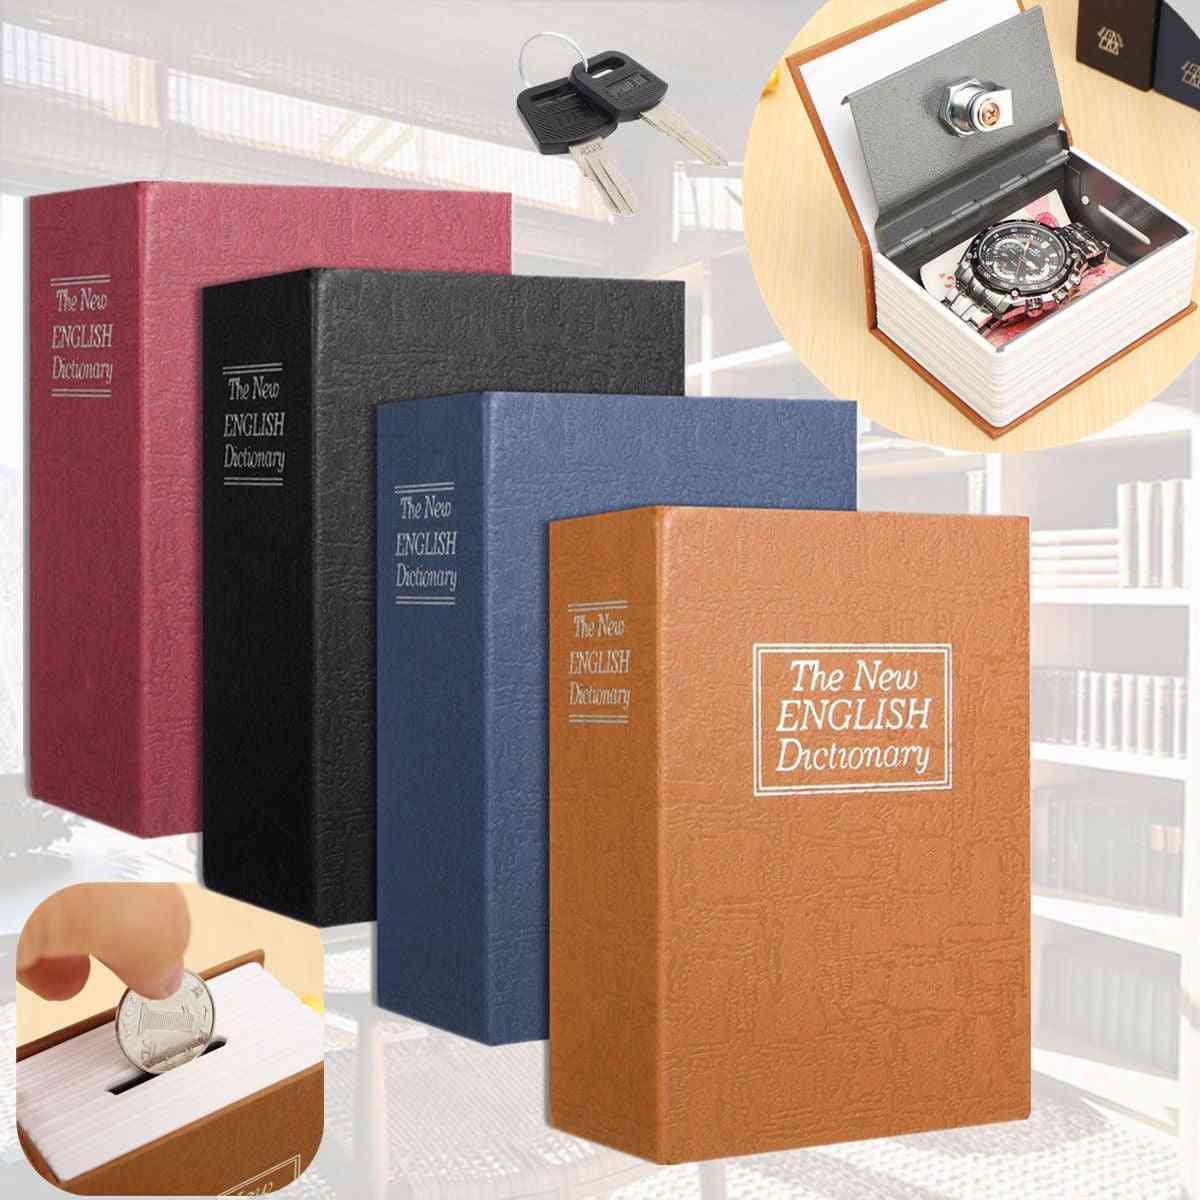 Dictionary Book Bank, Money Cash Home Storage Safe Box